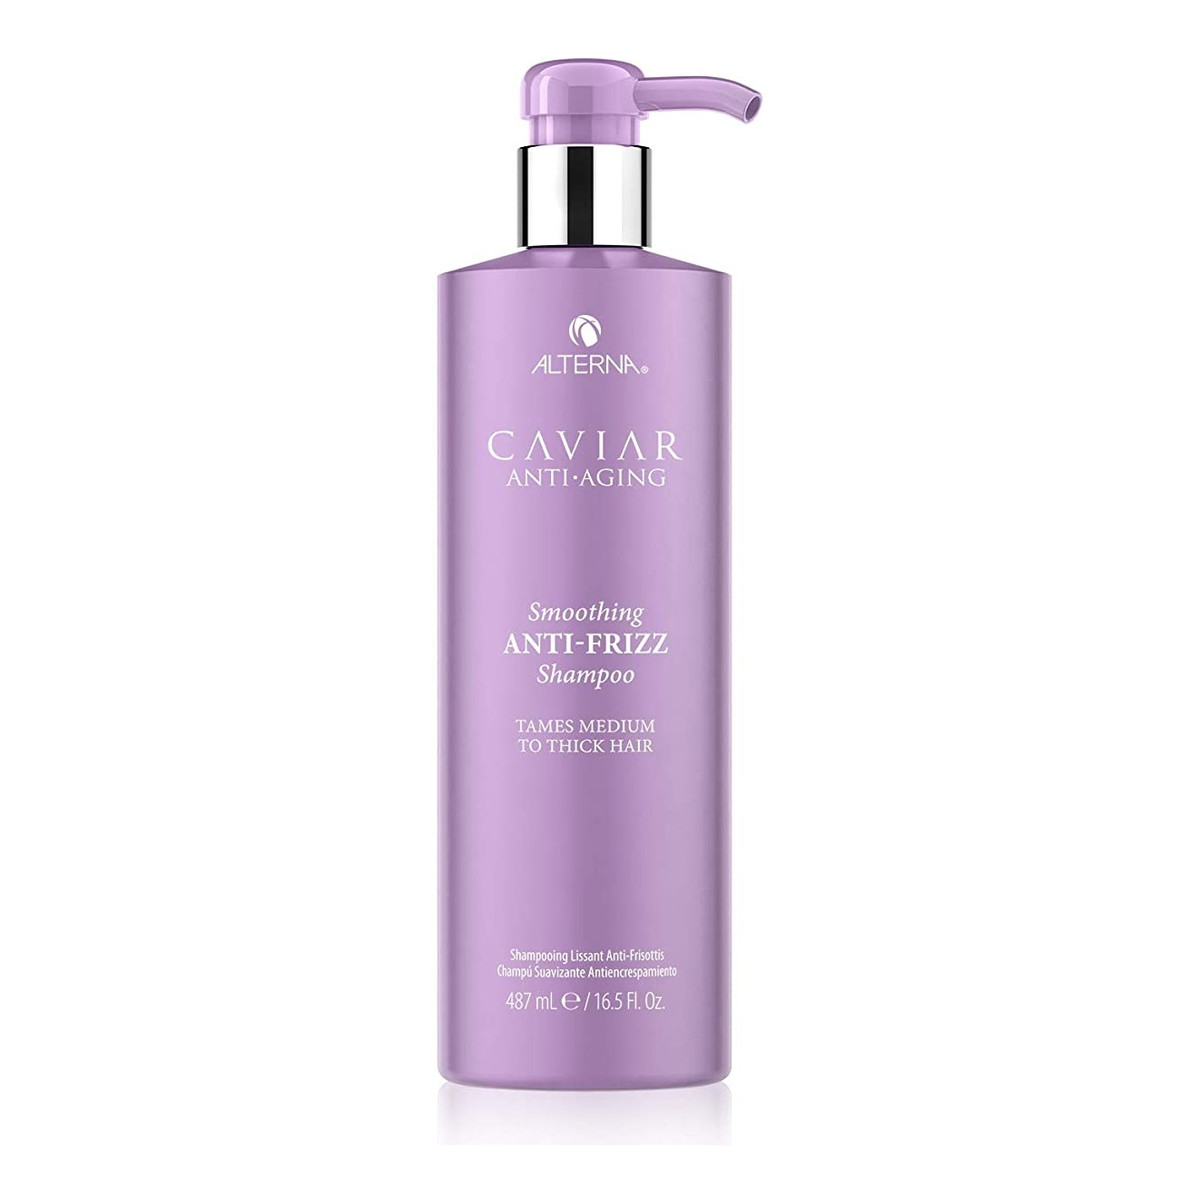 Alterna Caviar anti-aging smoothing anti-frizz shampoo szampon do włosów przeciw puszeniu się 487ml